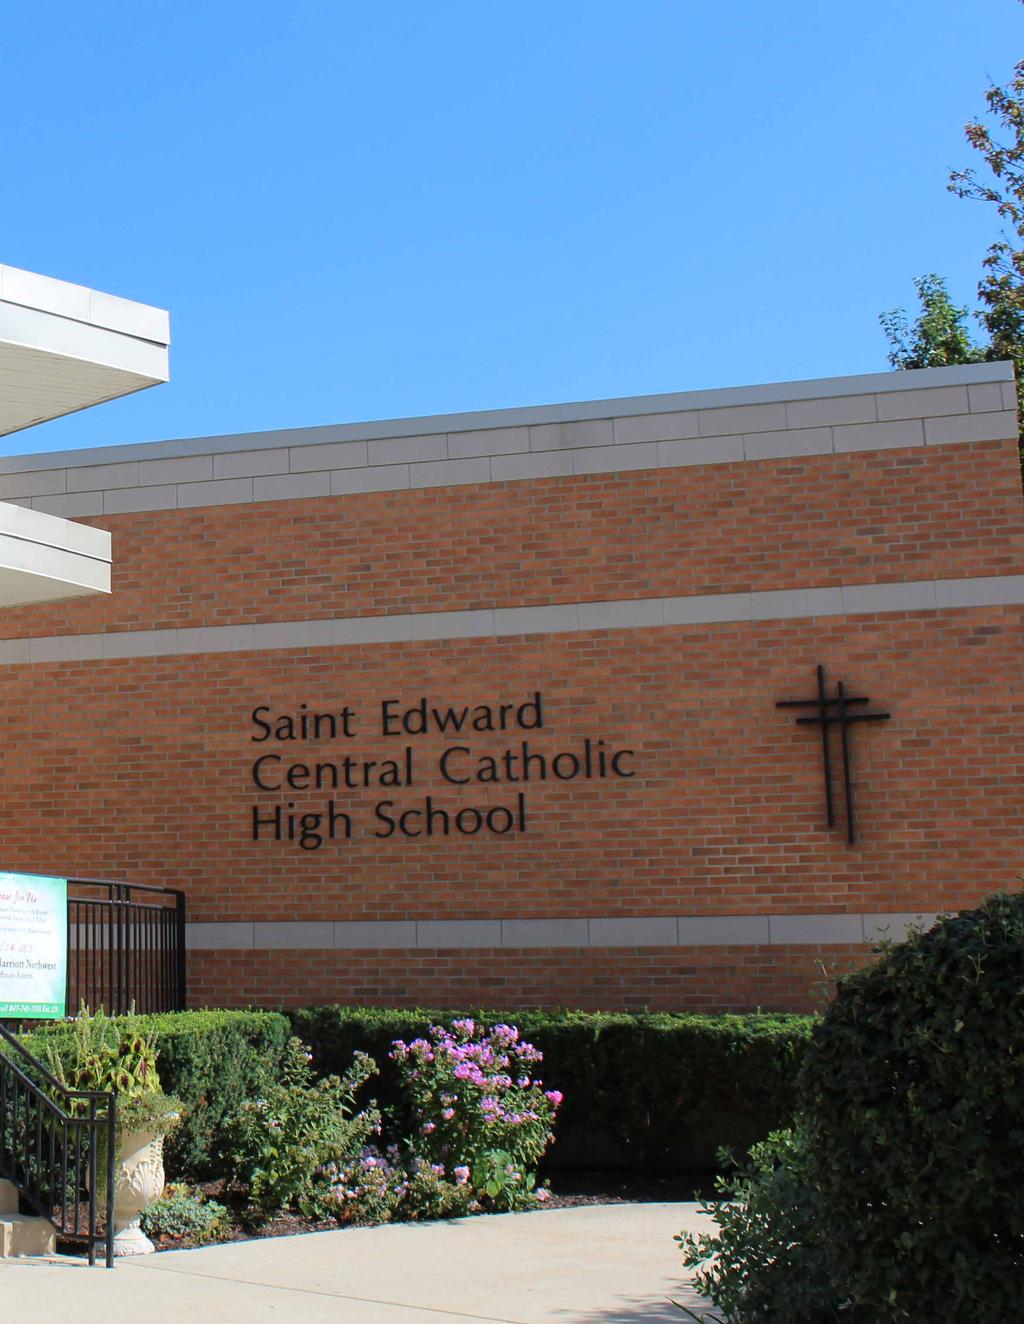 St. Edward Central Catholic High